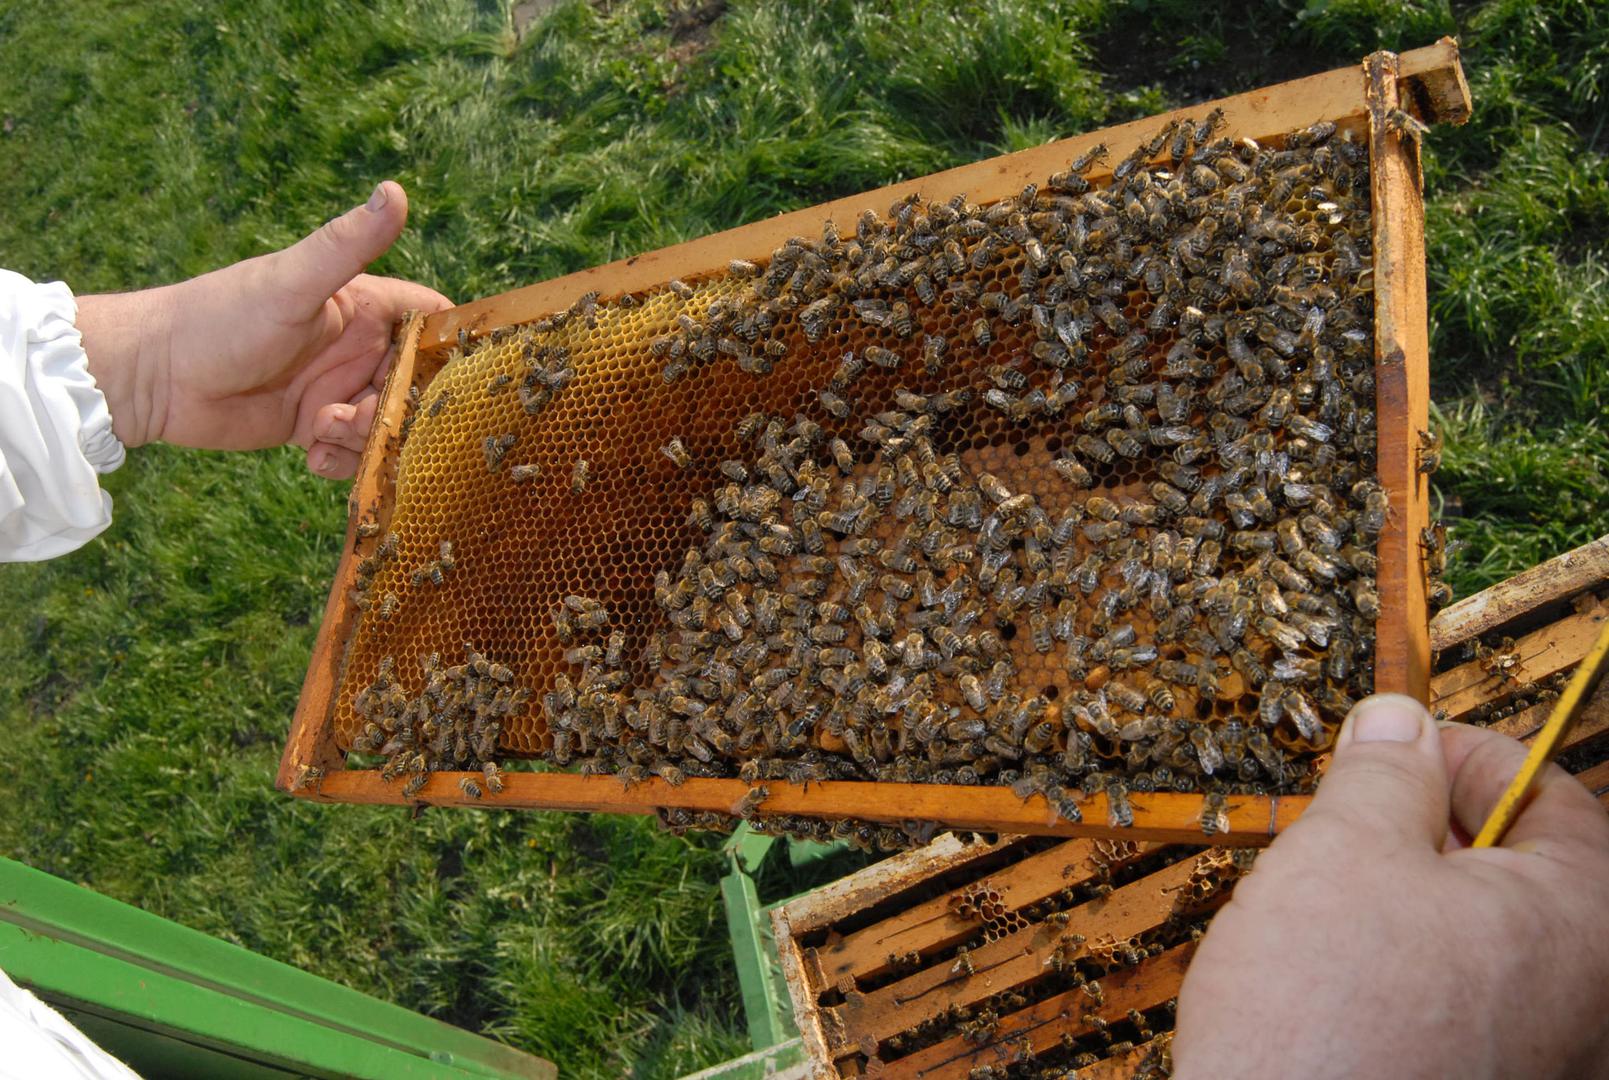 20. Slavonski med - med koji proizvode autohtone sive pčele. Prema načinu proizvodnje može biti u saću i vrcani, a prema vrstama može biti od bagrema, lipe, uljane repice, kestena, suncokreta, cvjetni ili medun hrasta sladuna.